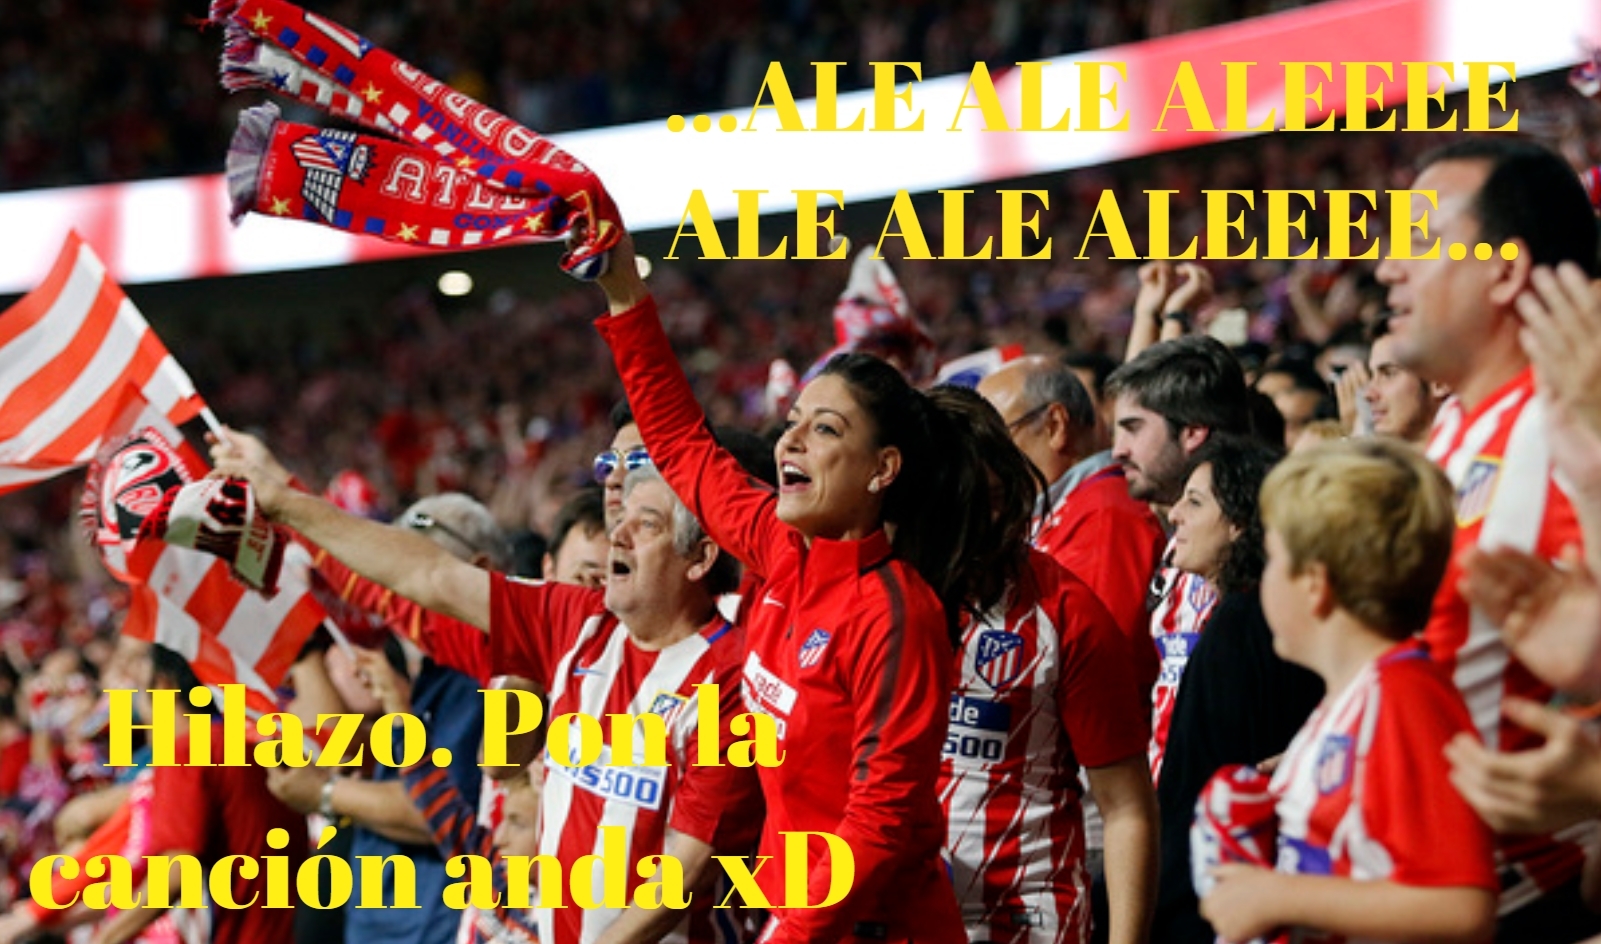 Liga 2020/21 Jº38: Valladolid vs Atlético de Madrid (Sábado 22 May./18:00) Bde83cbd65b4d213e28d252c6e976798